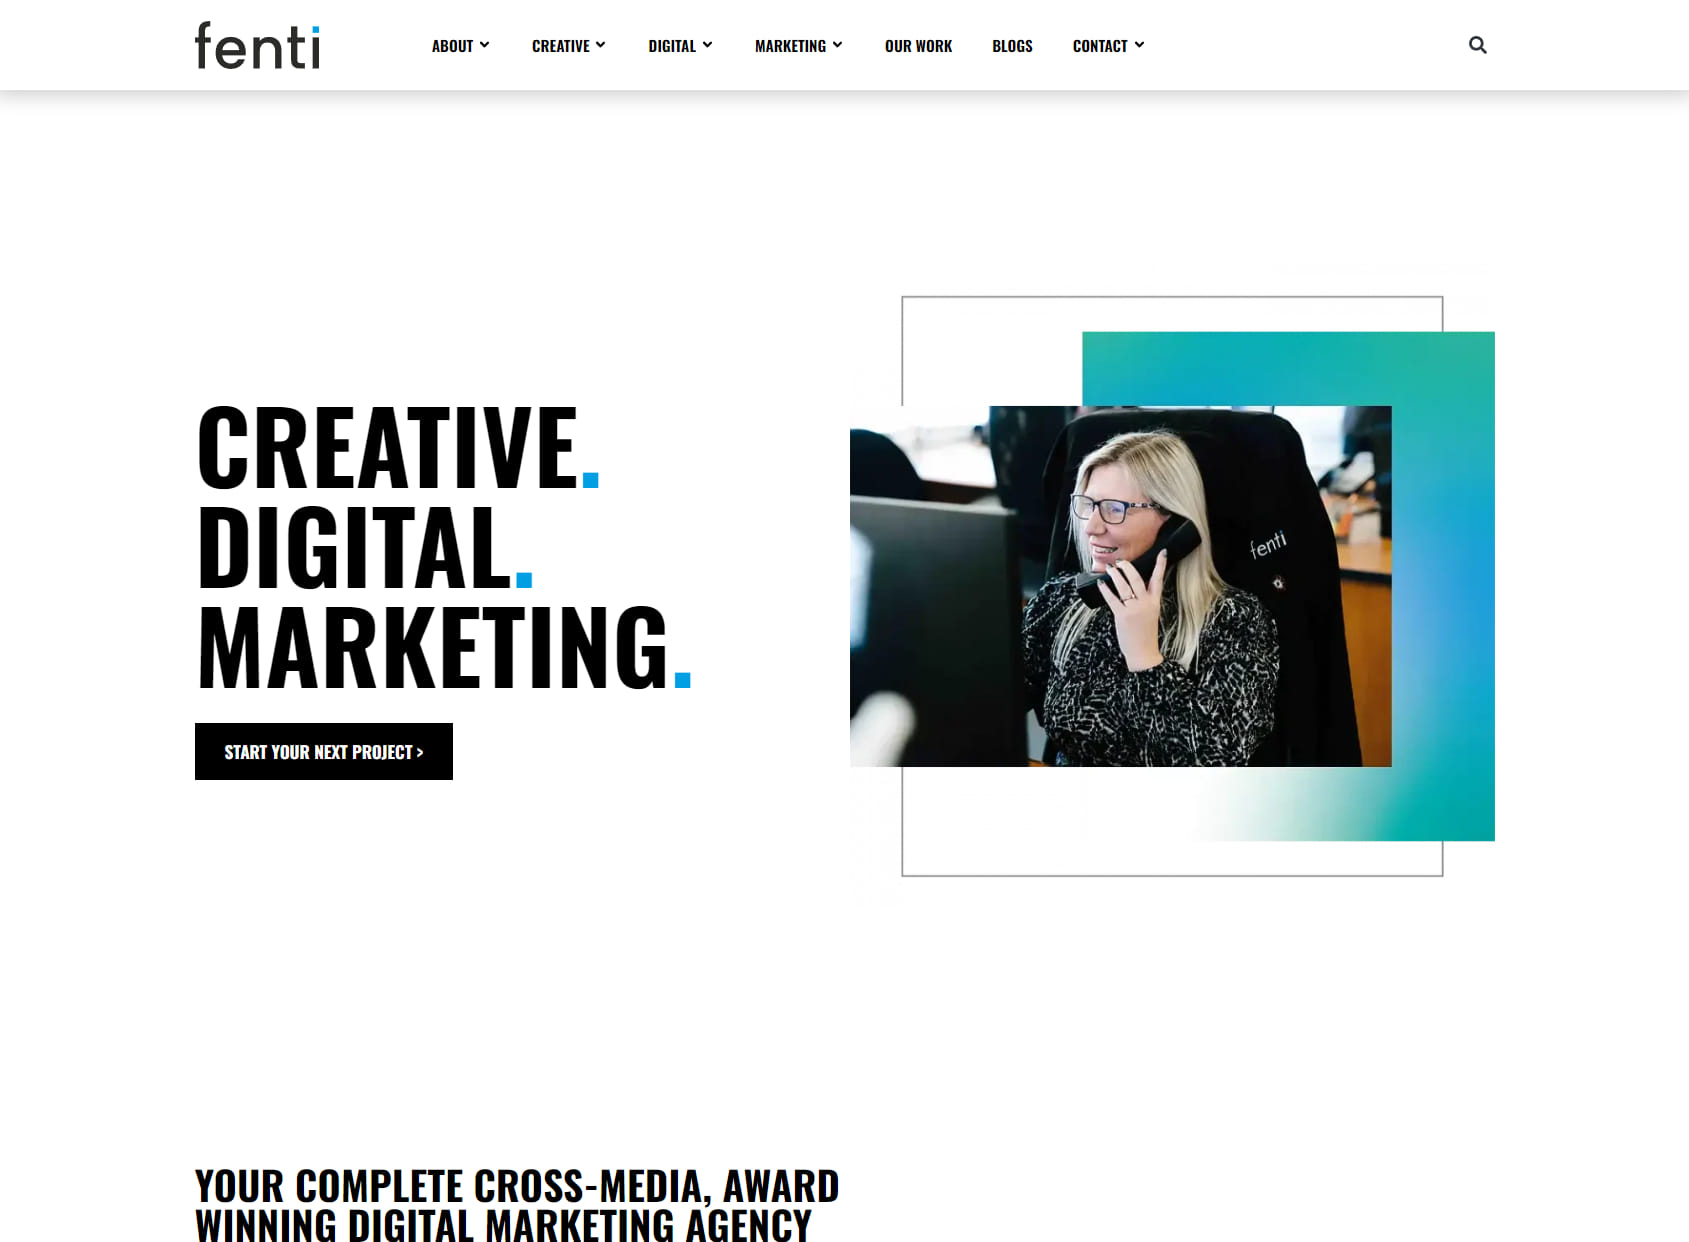 Fenti Digital Marketing Agency